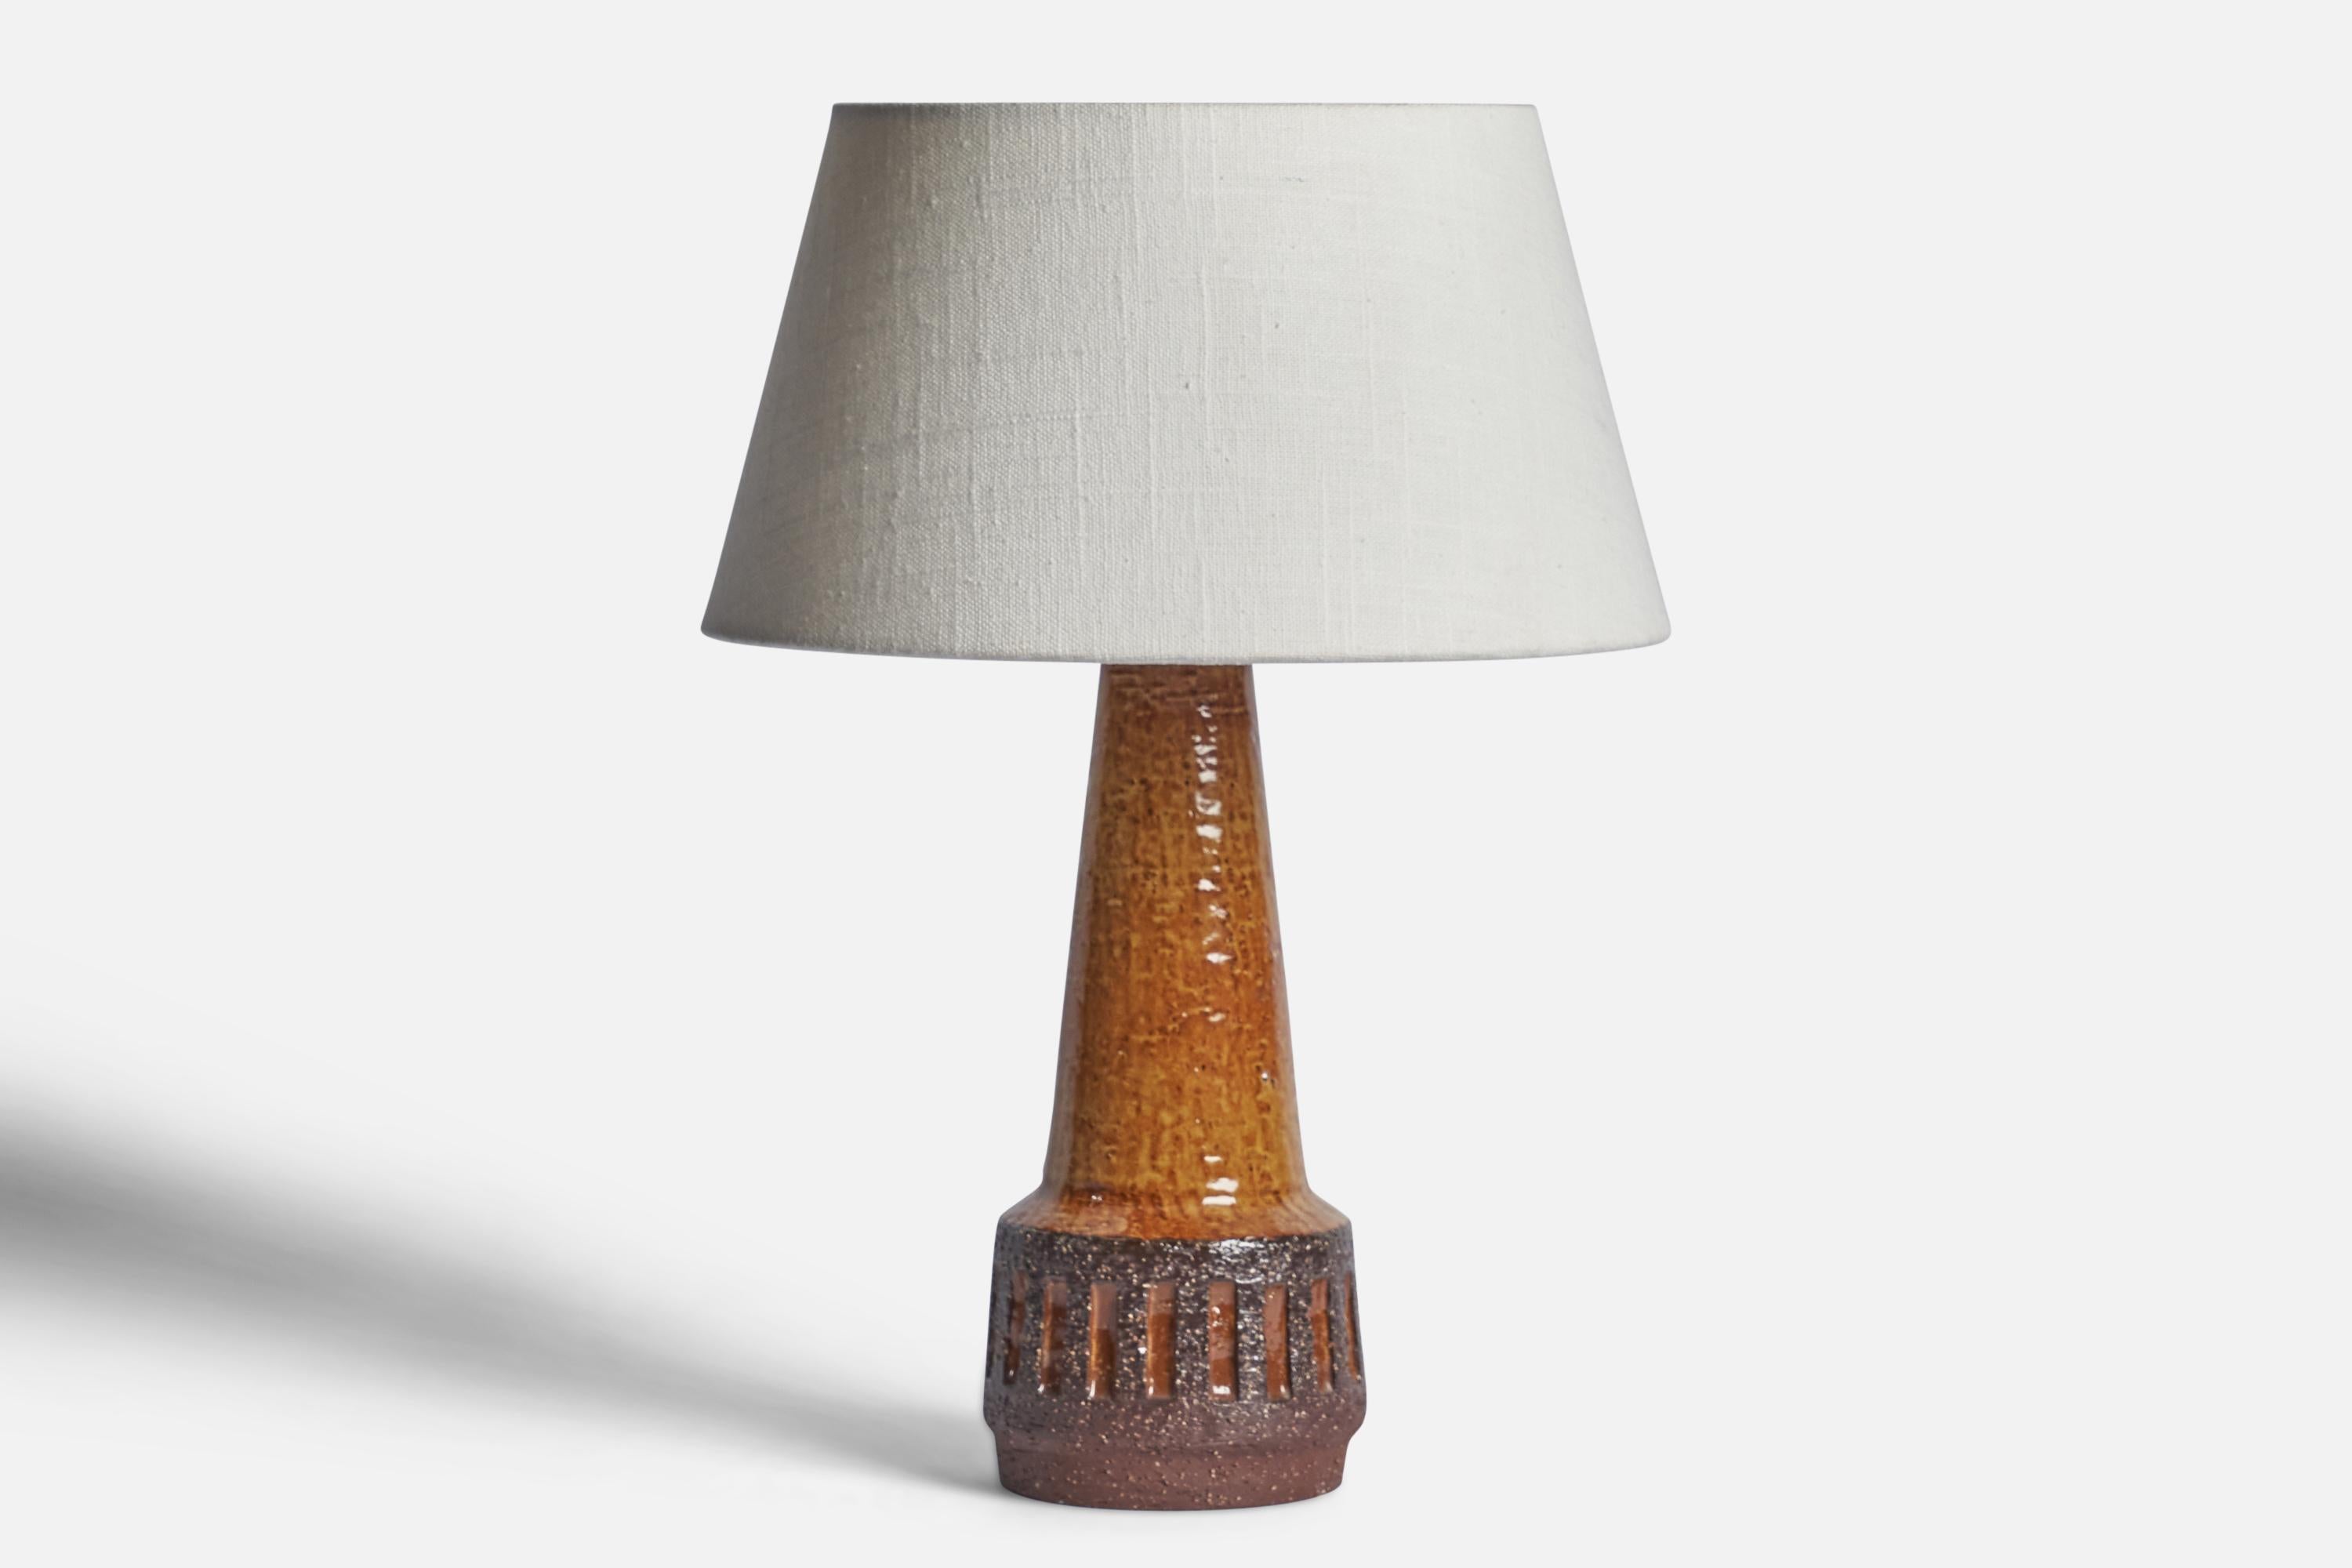 Tischlampe aus braun glasiertem Steingut, entworfen und hergestellt von Michael Andersen, Bornholm, Dänemark, 1960er Jahre.

Abmessungen der Lampe (Zoll): 11